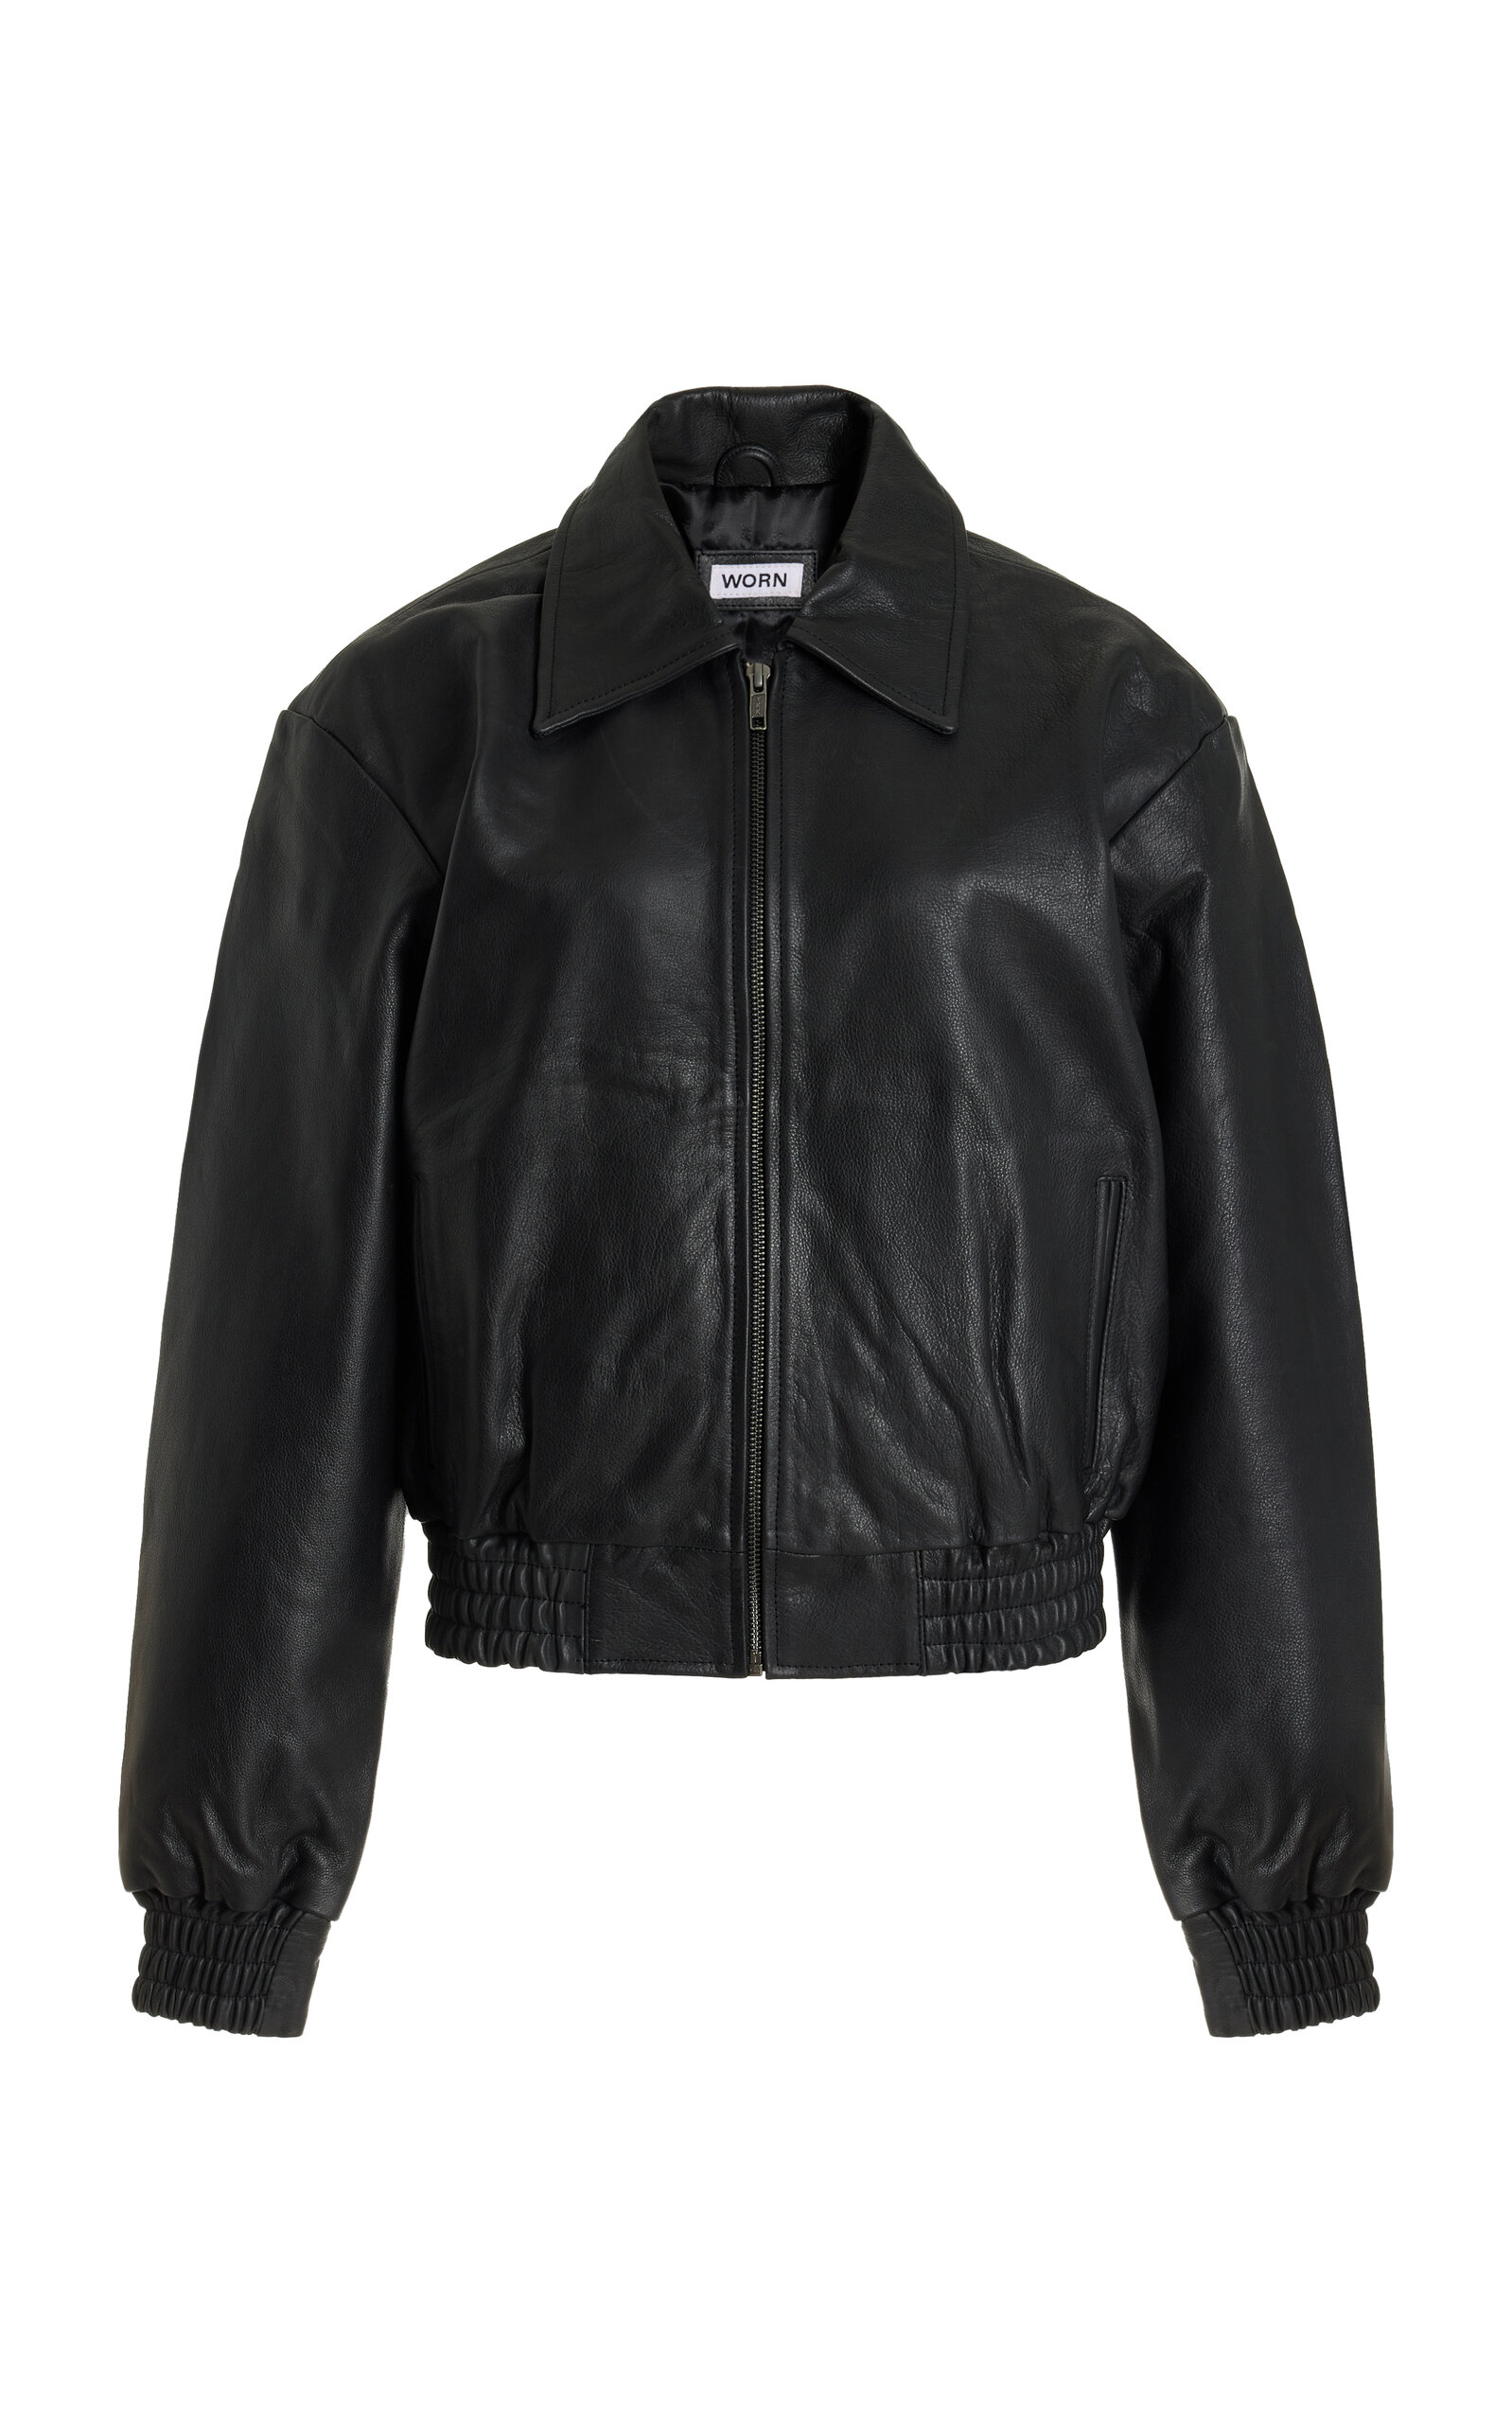 Worn Vintage Leather Bomber Jacket In Black